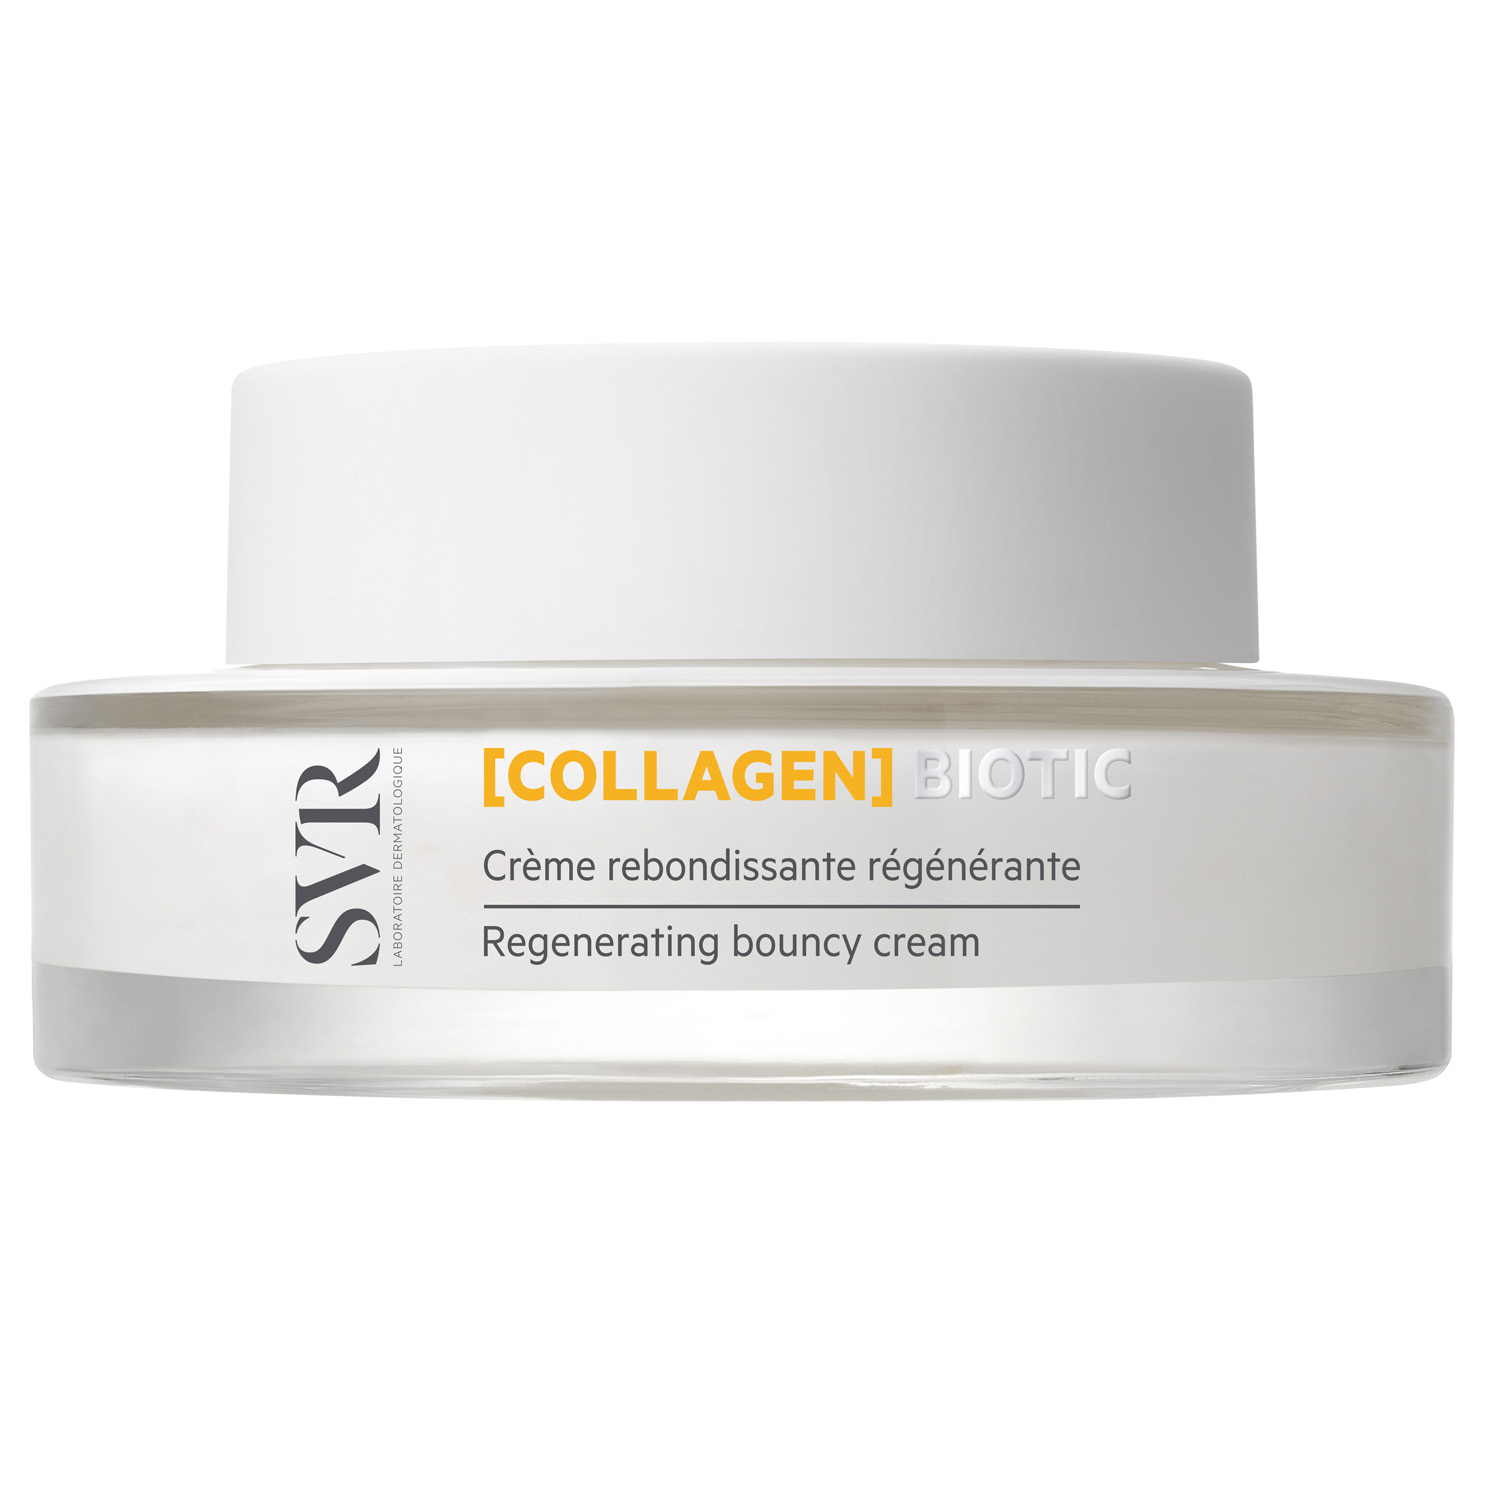 SVR Восстанавливающий крем [Collagen], 50 мл (SVR, Biotic) цена и фото